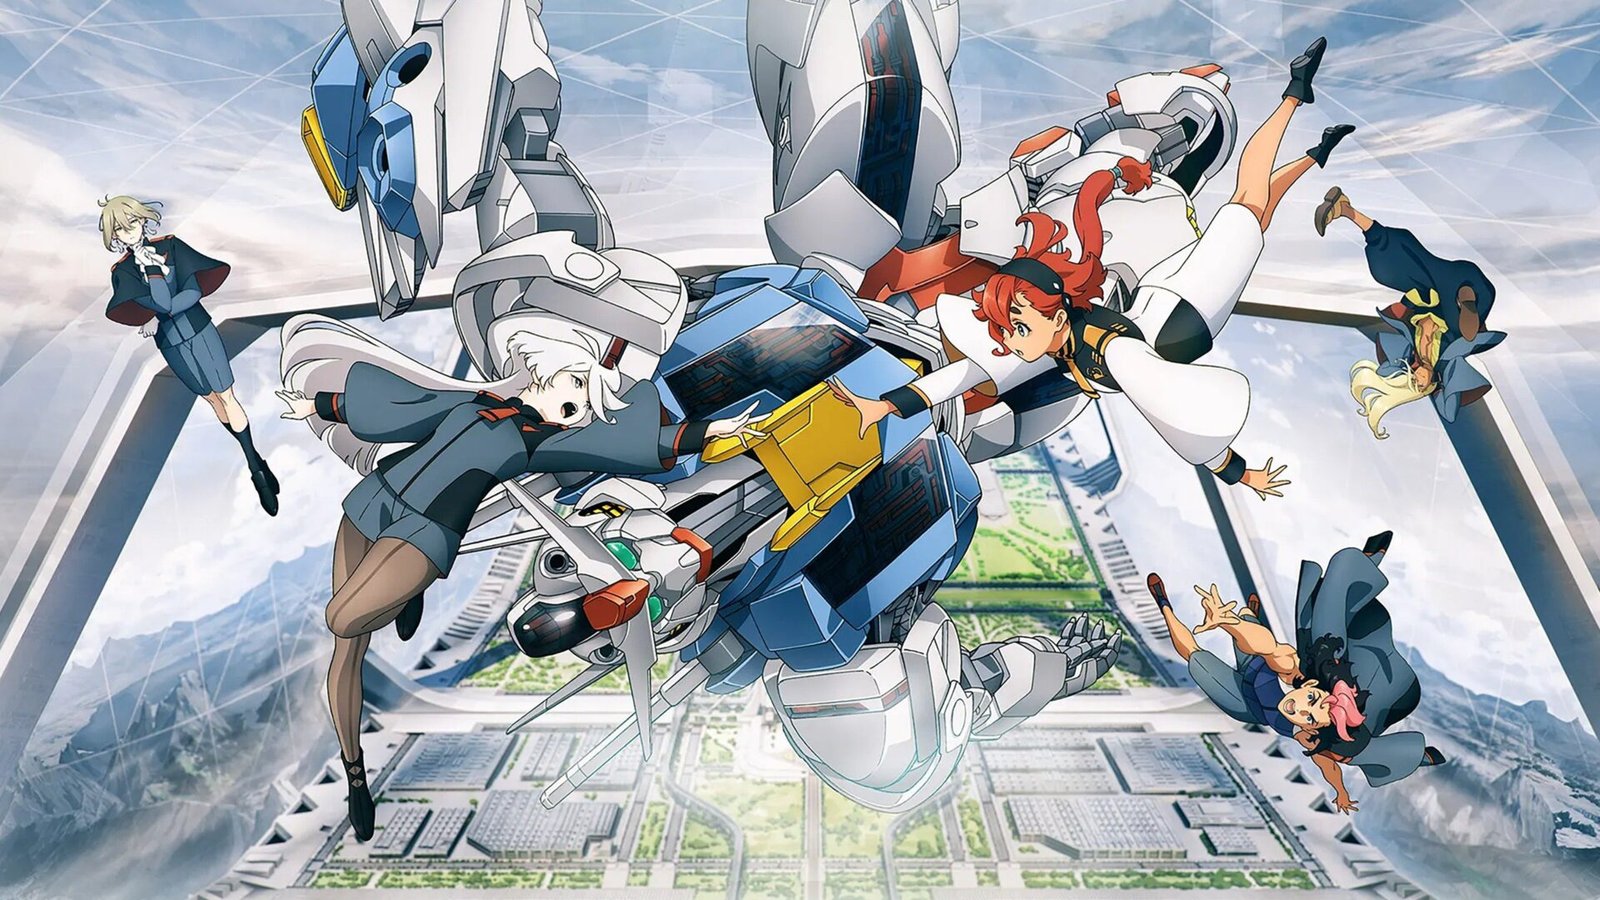 Gundam featured